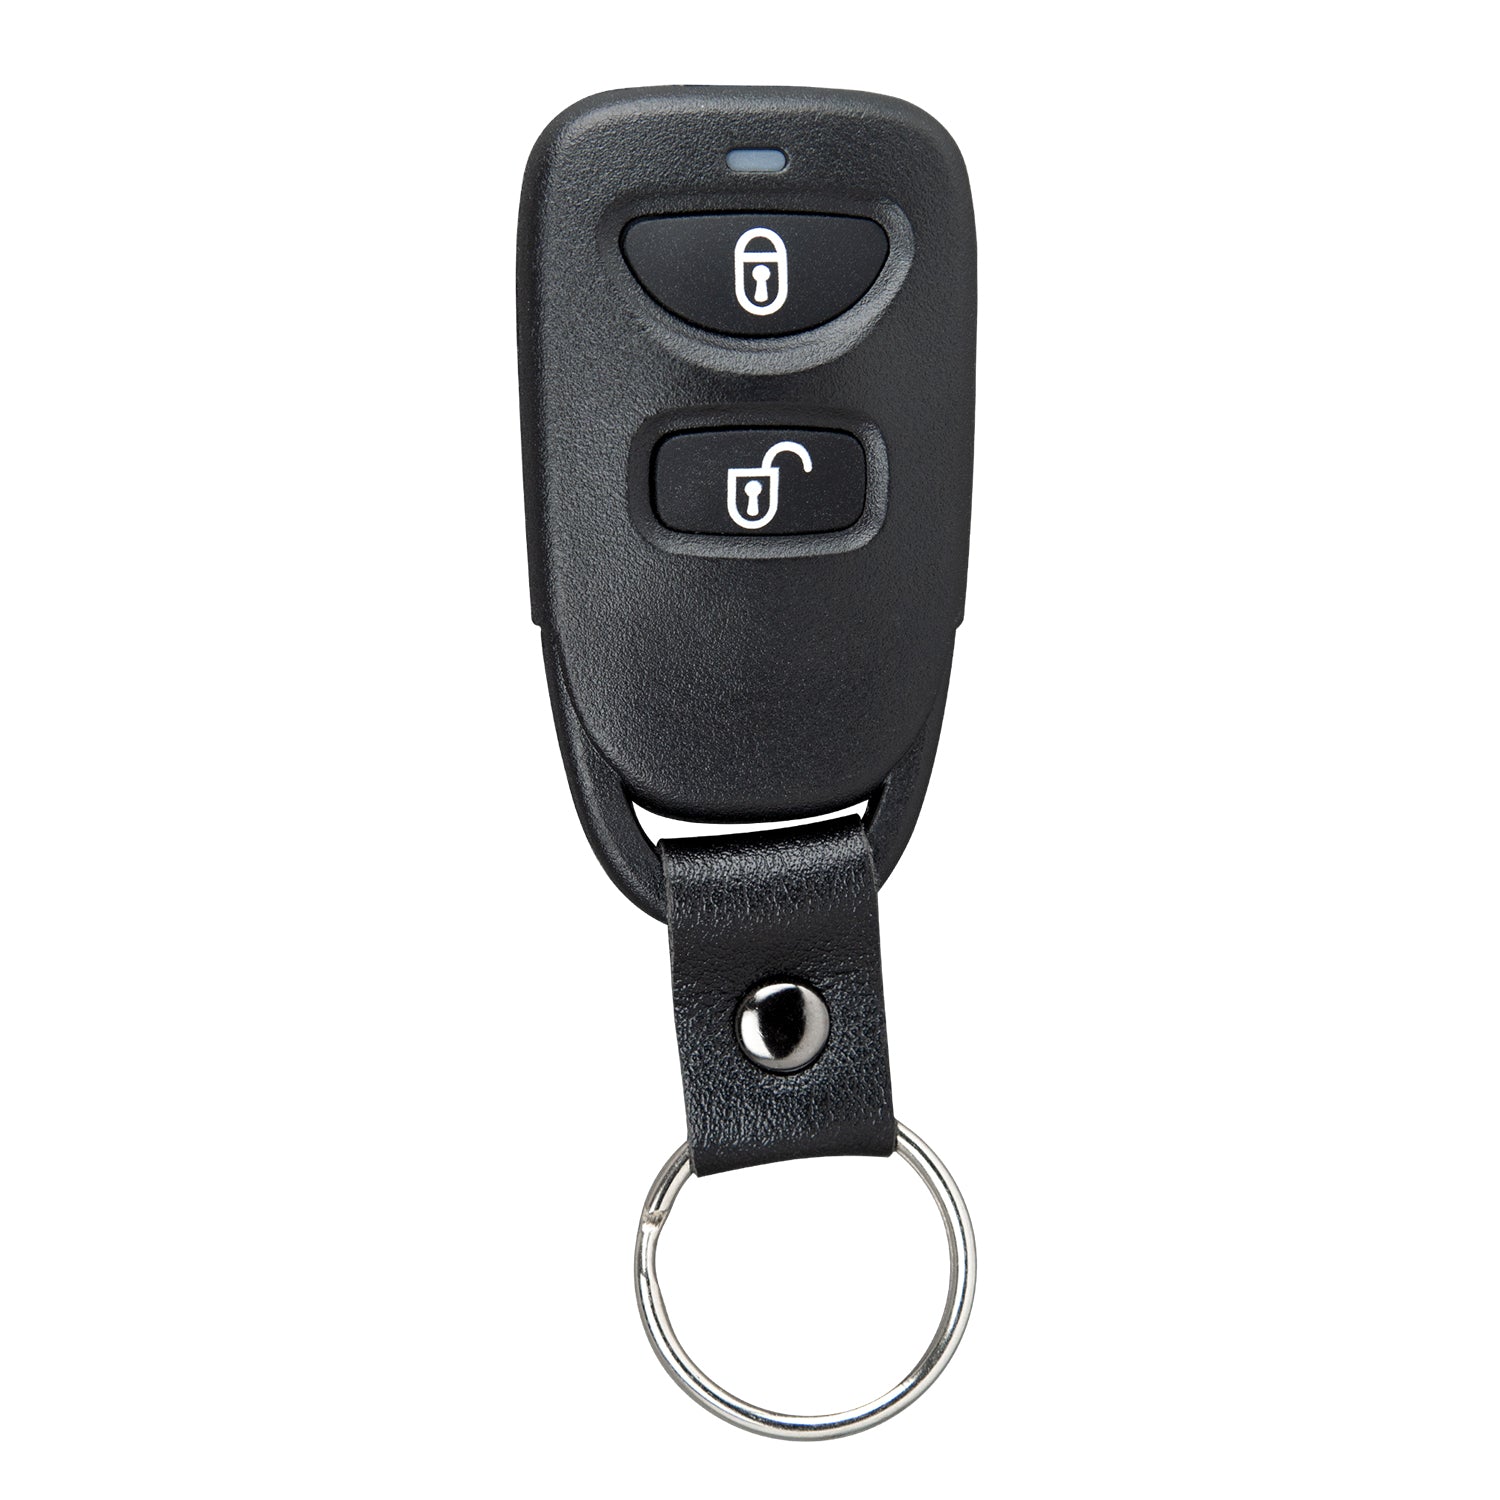 3 Button Remote for Hyundai Accent 2014 2015 2016 2017 TQ8-RKE-4F14 95430-1R300 433 MHz